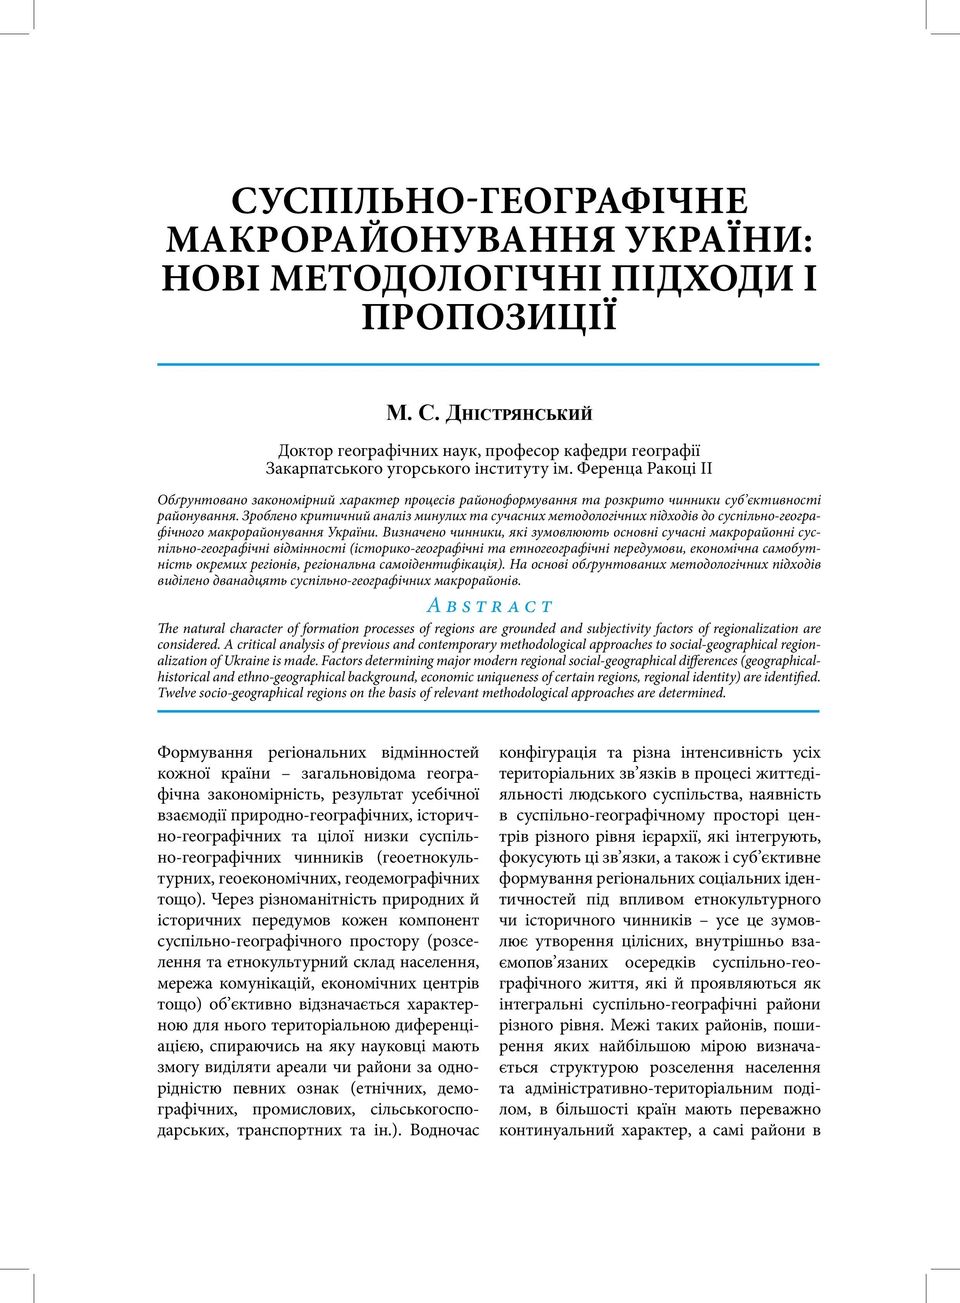 Зроблено критичний аналіз минулих та сучасних методологічних підходів до суспільно-географічного макрорайонування України.